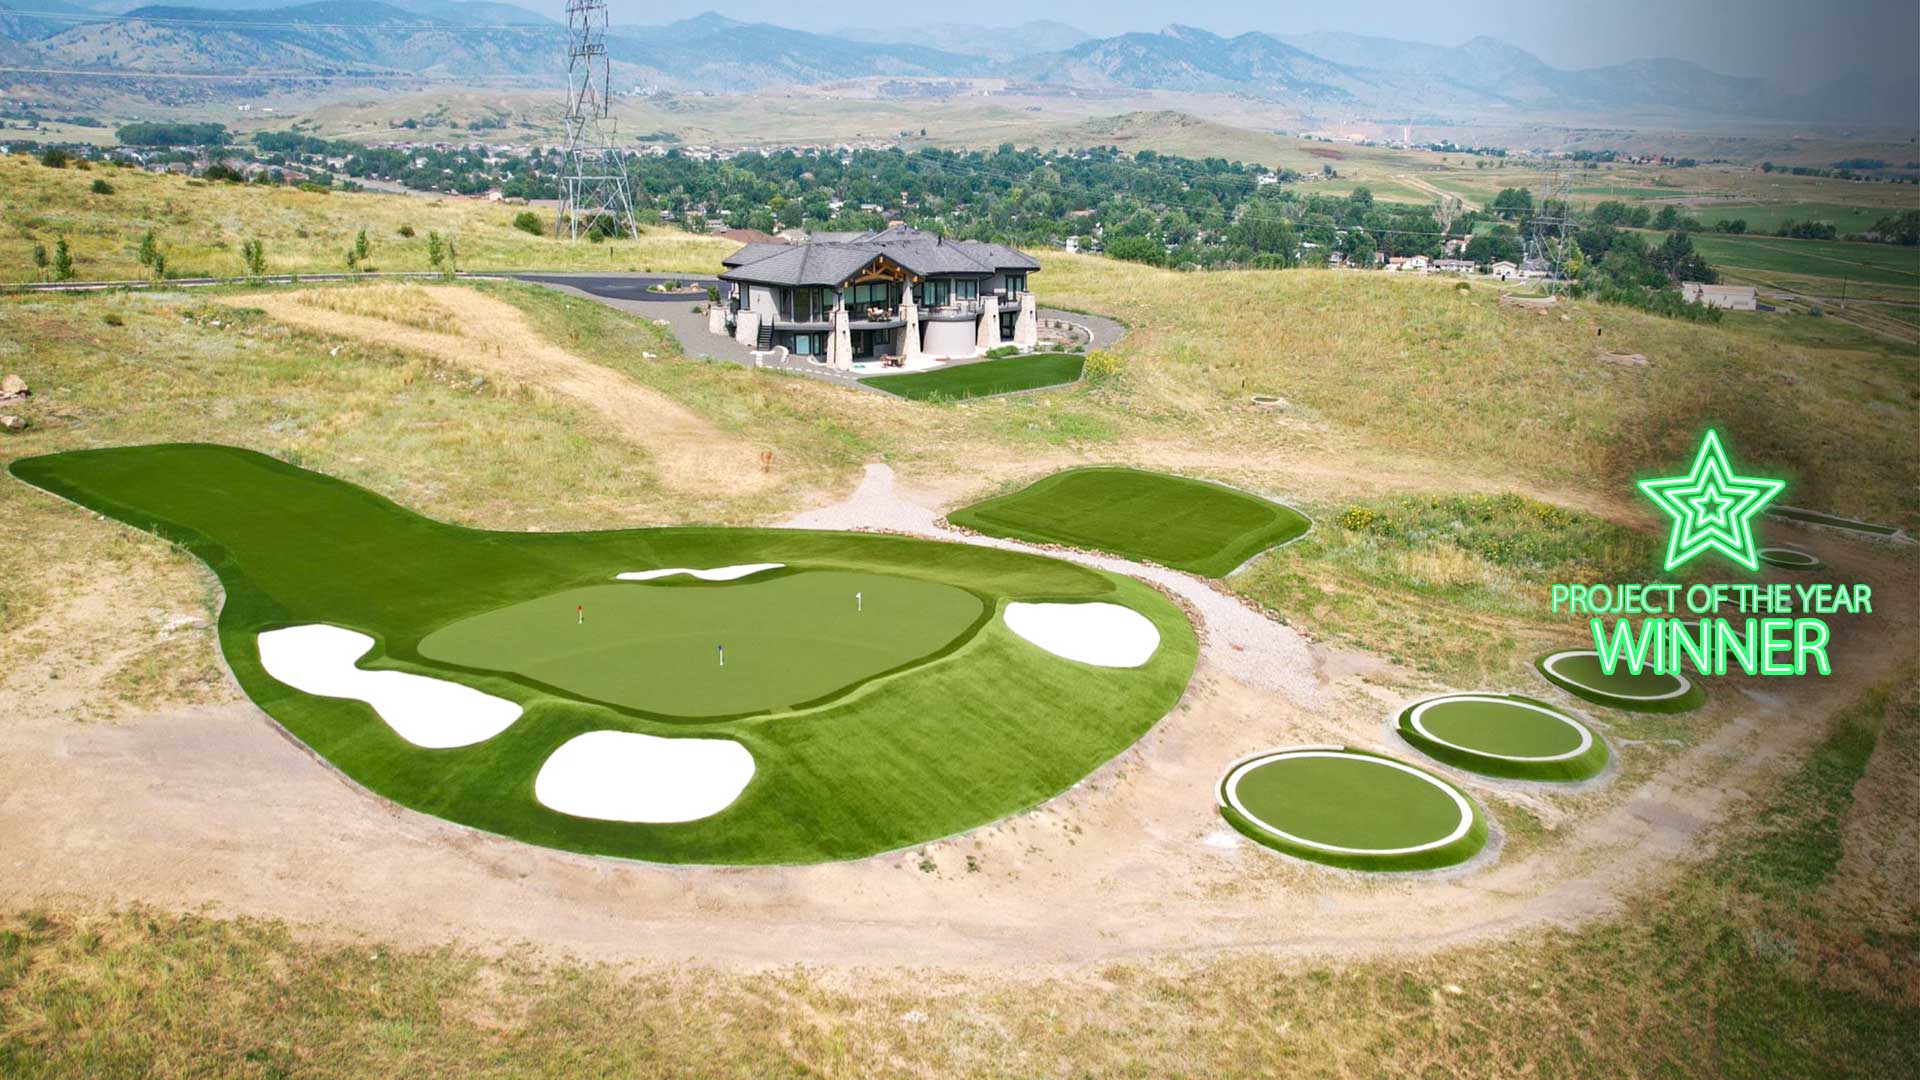 Campo de golfe residencial do Colorado recebe reconhecimento de prêmio